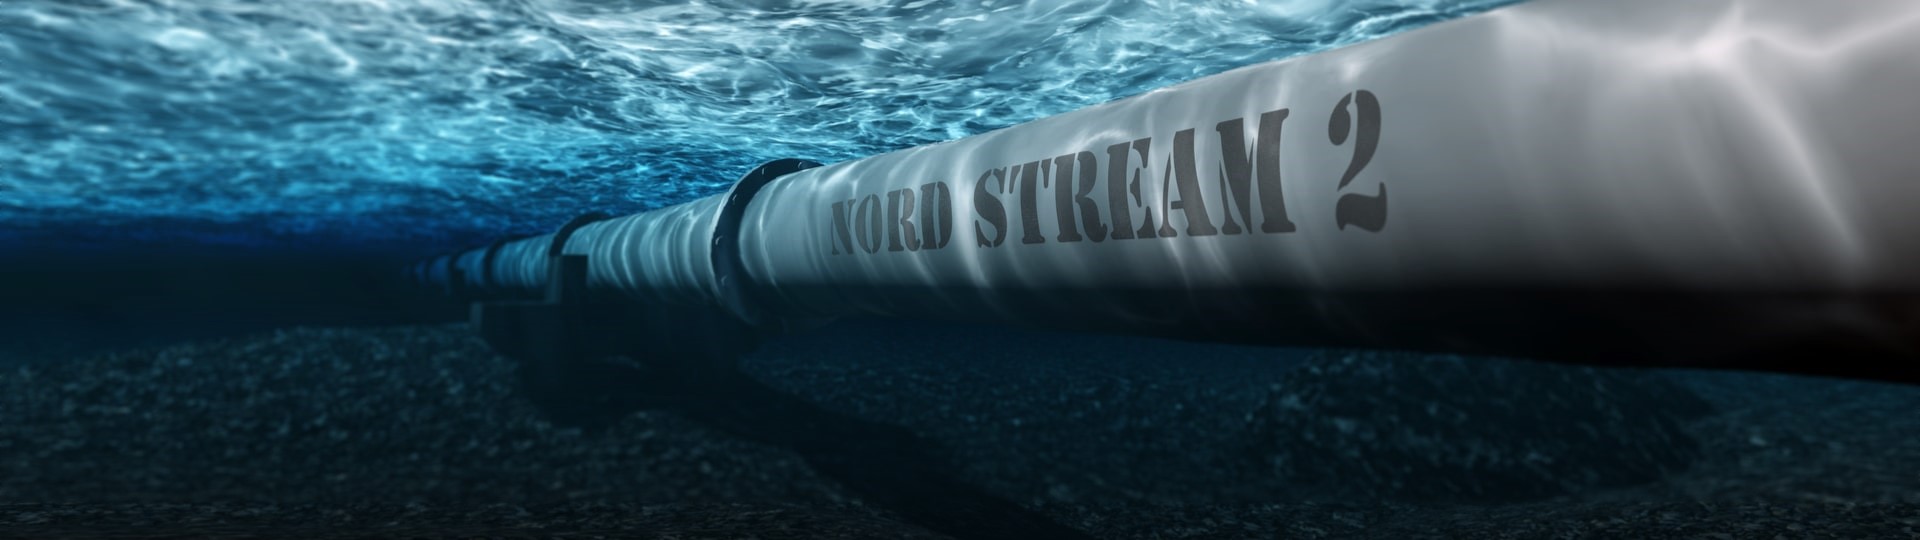 Plynovod Nord Stream 2 bude letos určitě dokončen